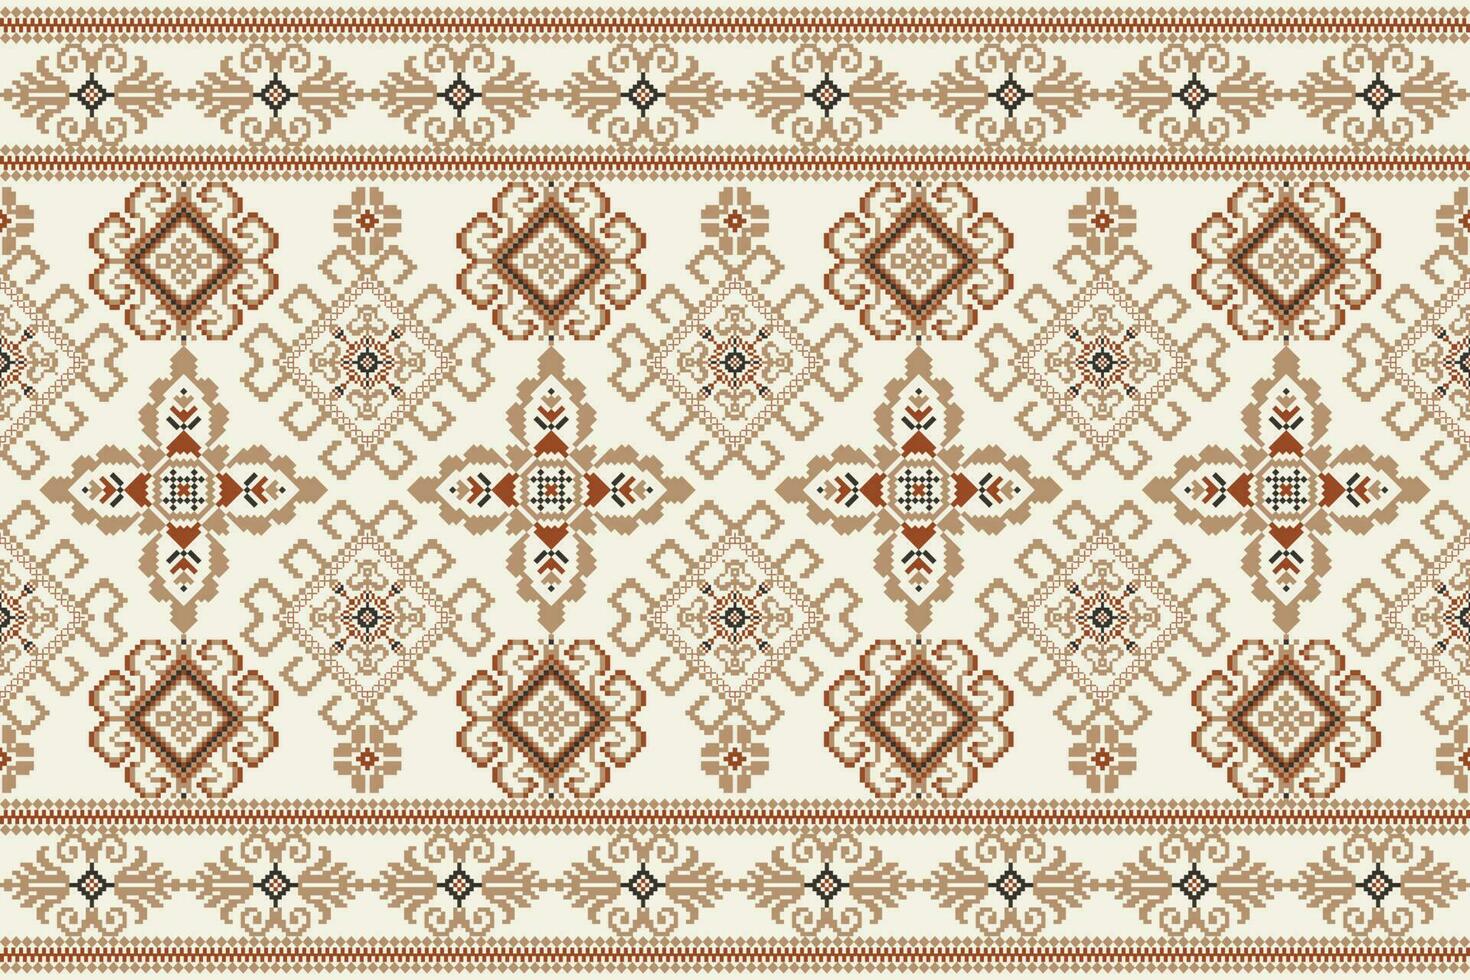 meetkundig bloemen kruis steek borduurwerk Aan wit achtergrond.etnisch oosters patroon traditioneel.azteken stijl abstract vector illustratie.ontwerp voor textuur, stof, kleding, verpakking, decoratie, sjaal.